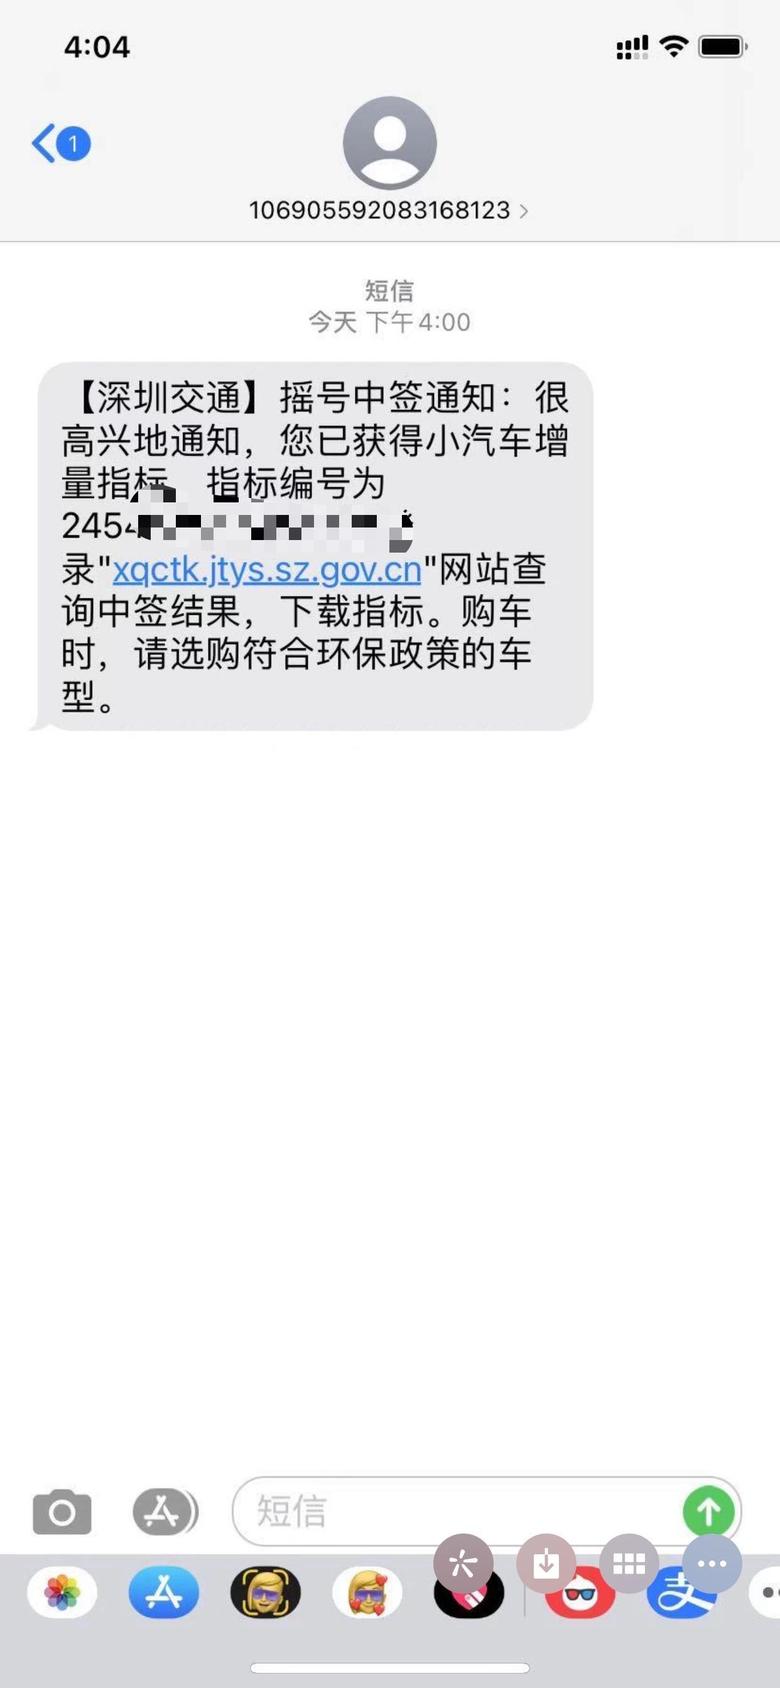 宝马2系有没有深圳的朋友订了车就摇到号了车已到港坐等提车作业